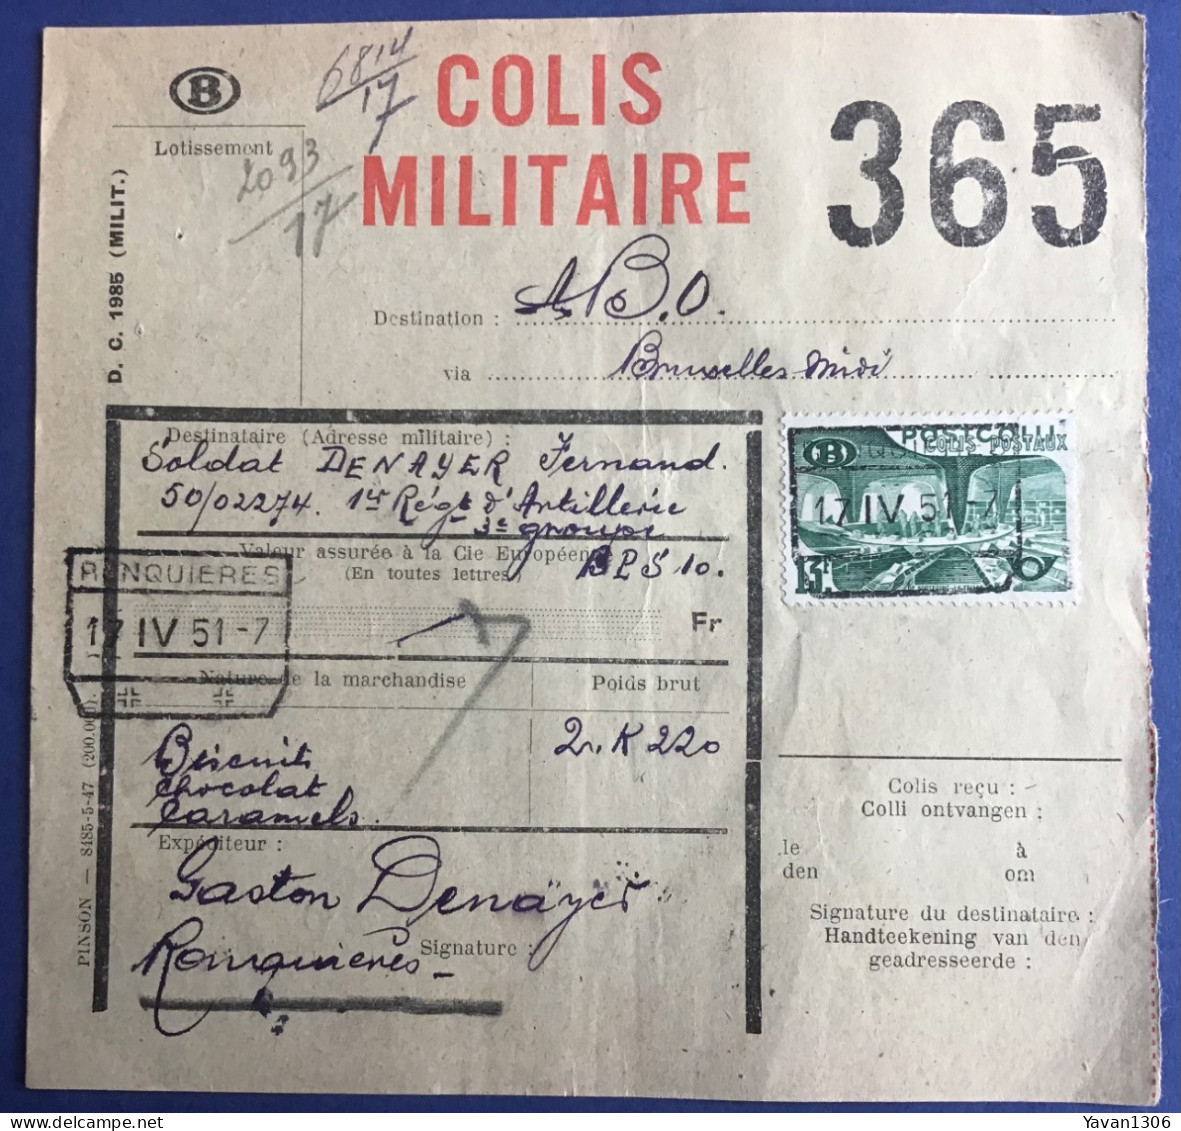 Ronquieres  Expédition  D’un Colis Militaire Vers Le Soldat Denayer Fernand  17 Avril 1951 - Dokumente & Fragmente